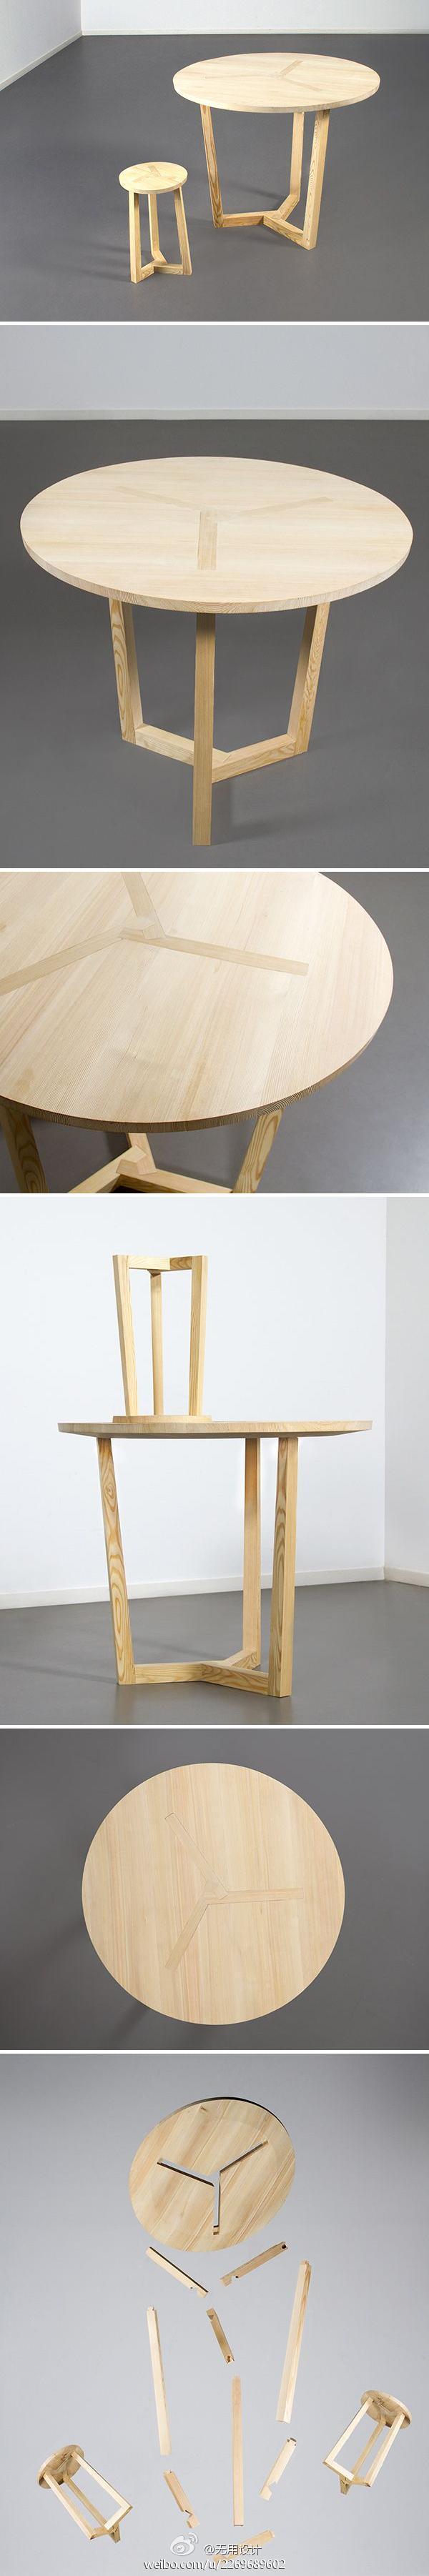 "ter"桌椅是从日本木工中受到启发,但其原理与中国传统的榫卯结构相似